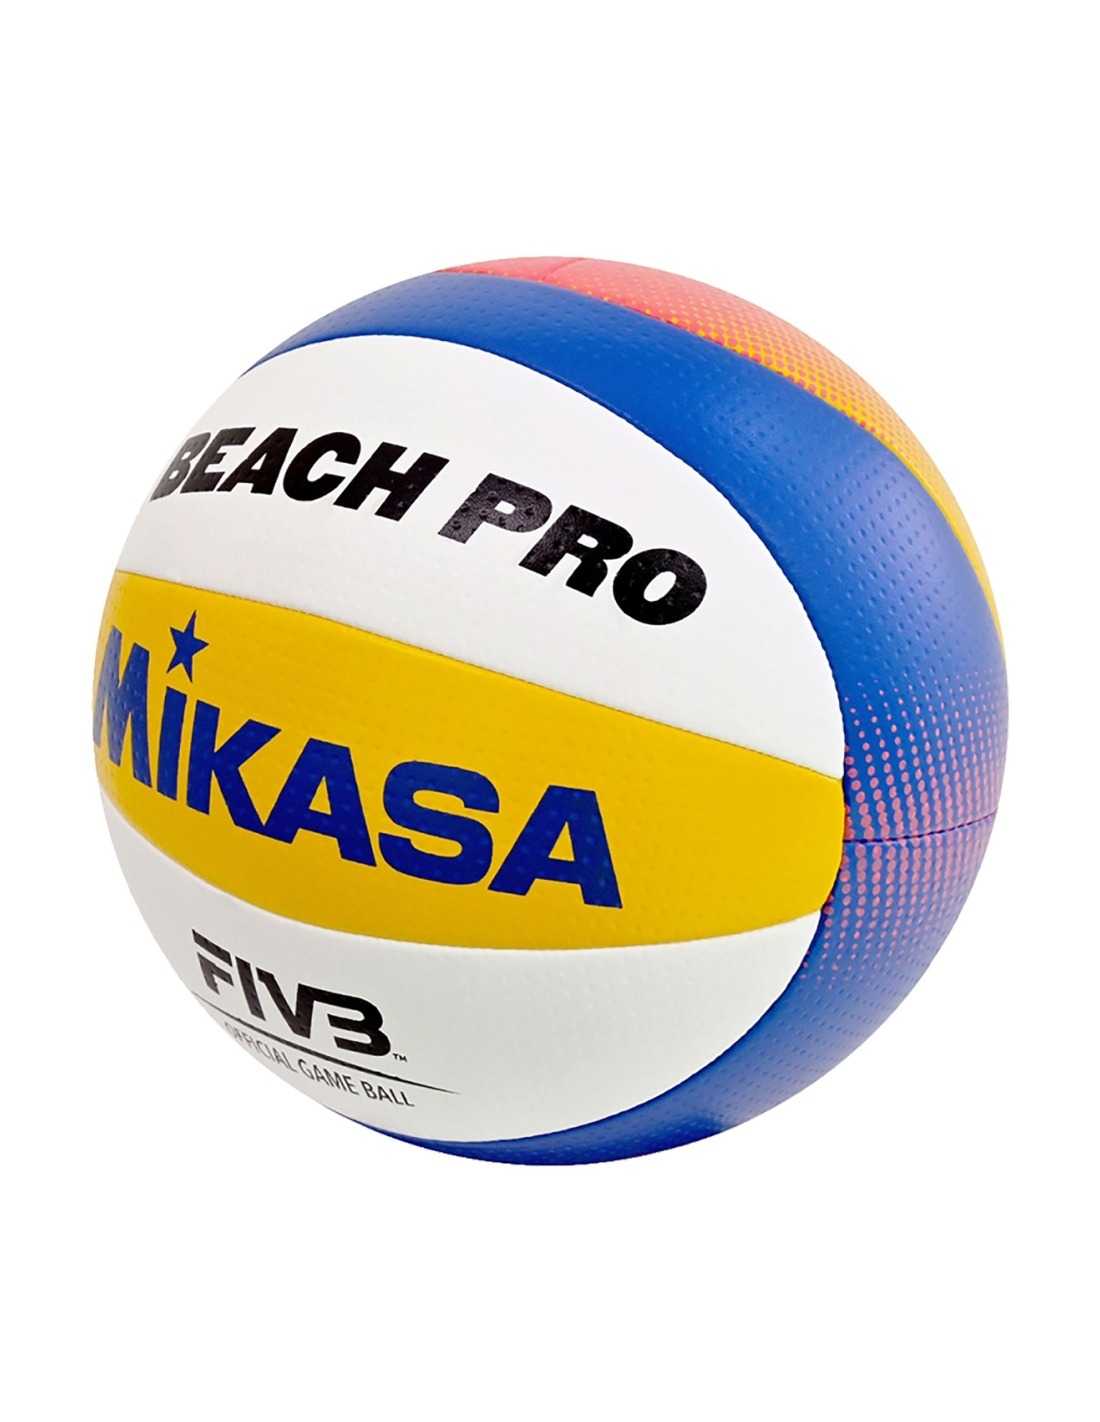 Mikasa, una de las marcas de balones de fútbol más conocidas